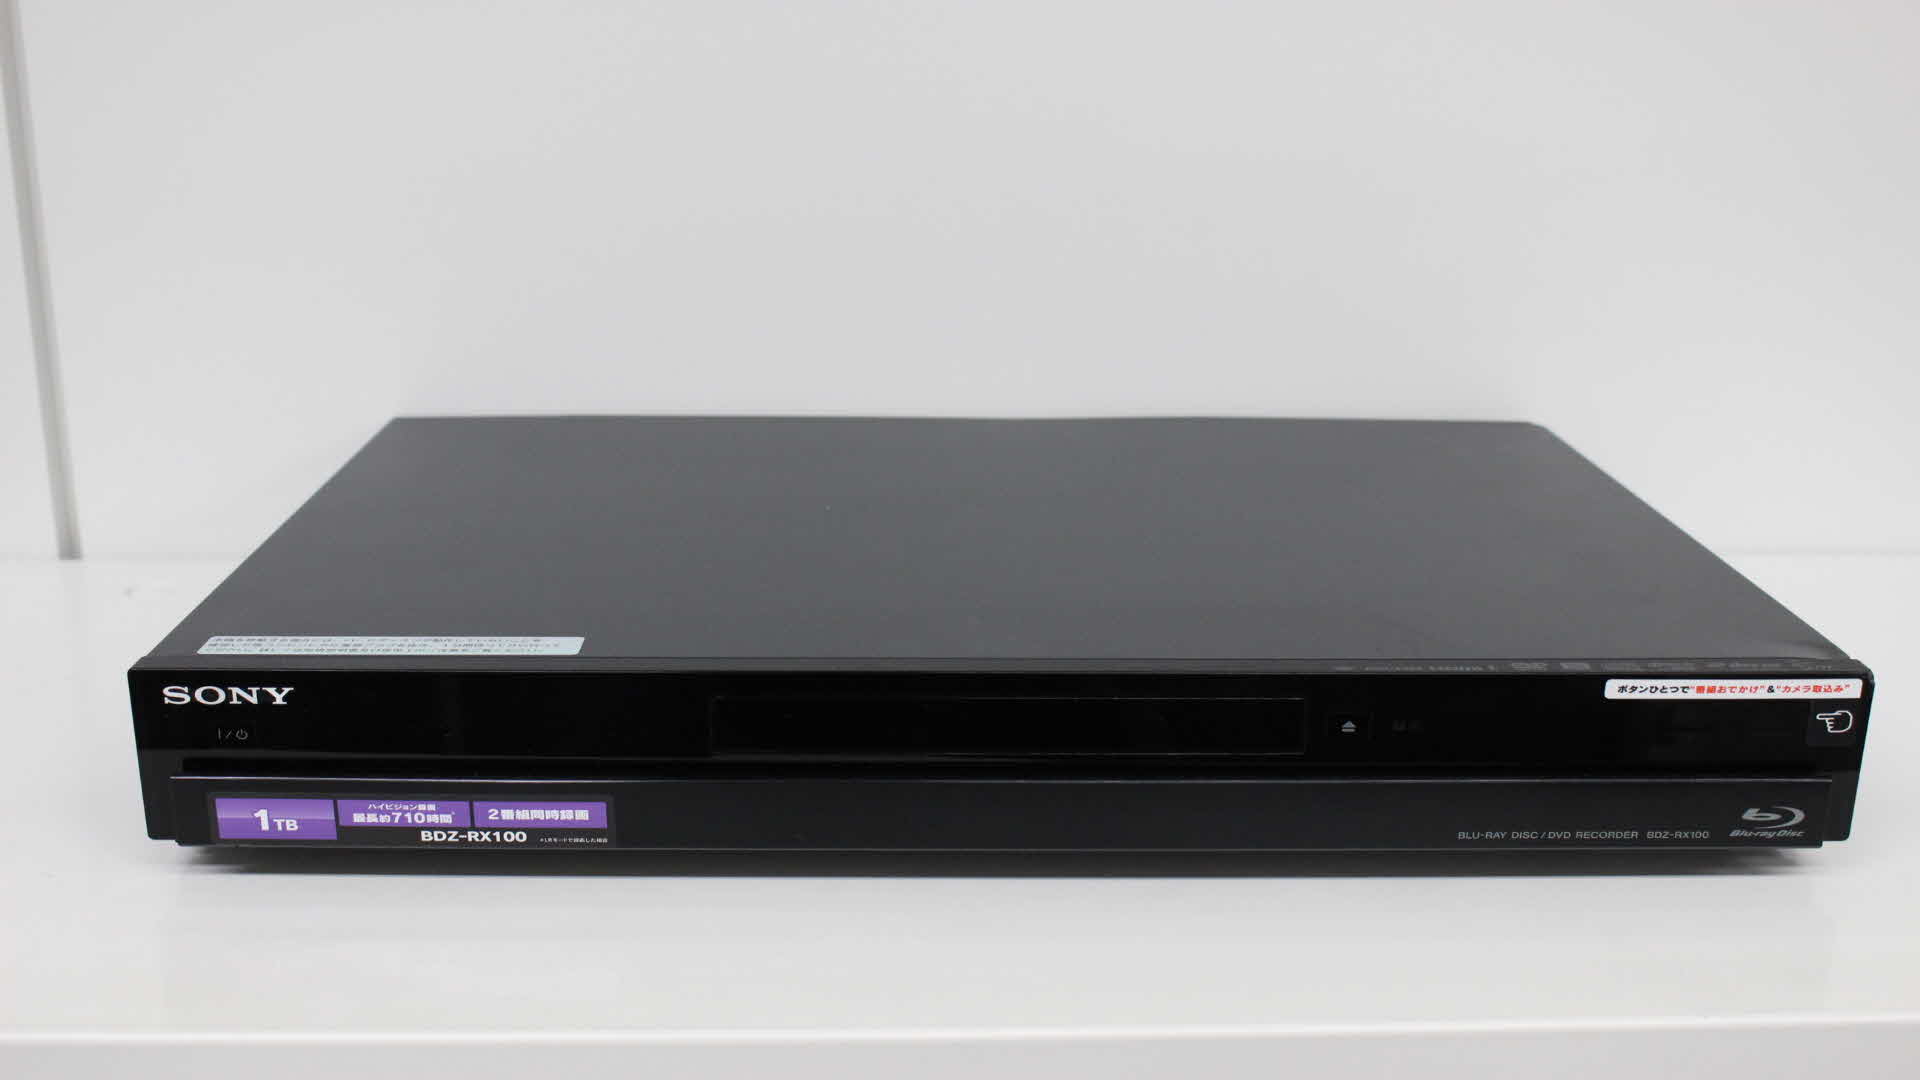 SONY製Blu-ray レコーダー BDZ-AT900 データ復旧 動画データ復元 動画 